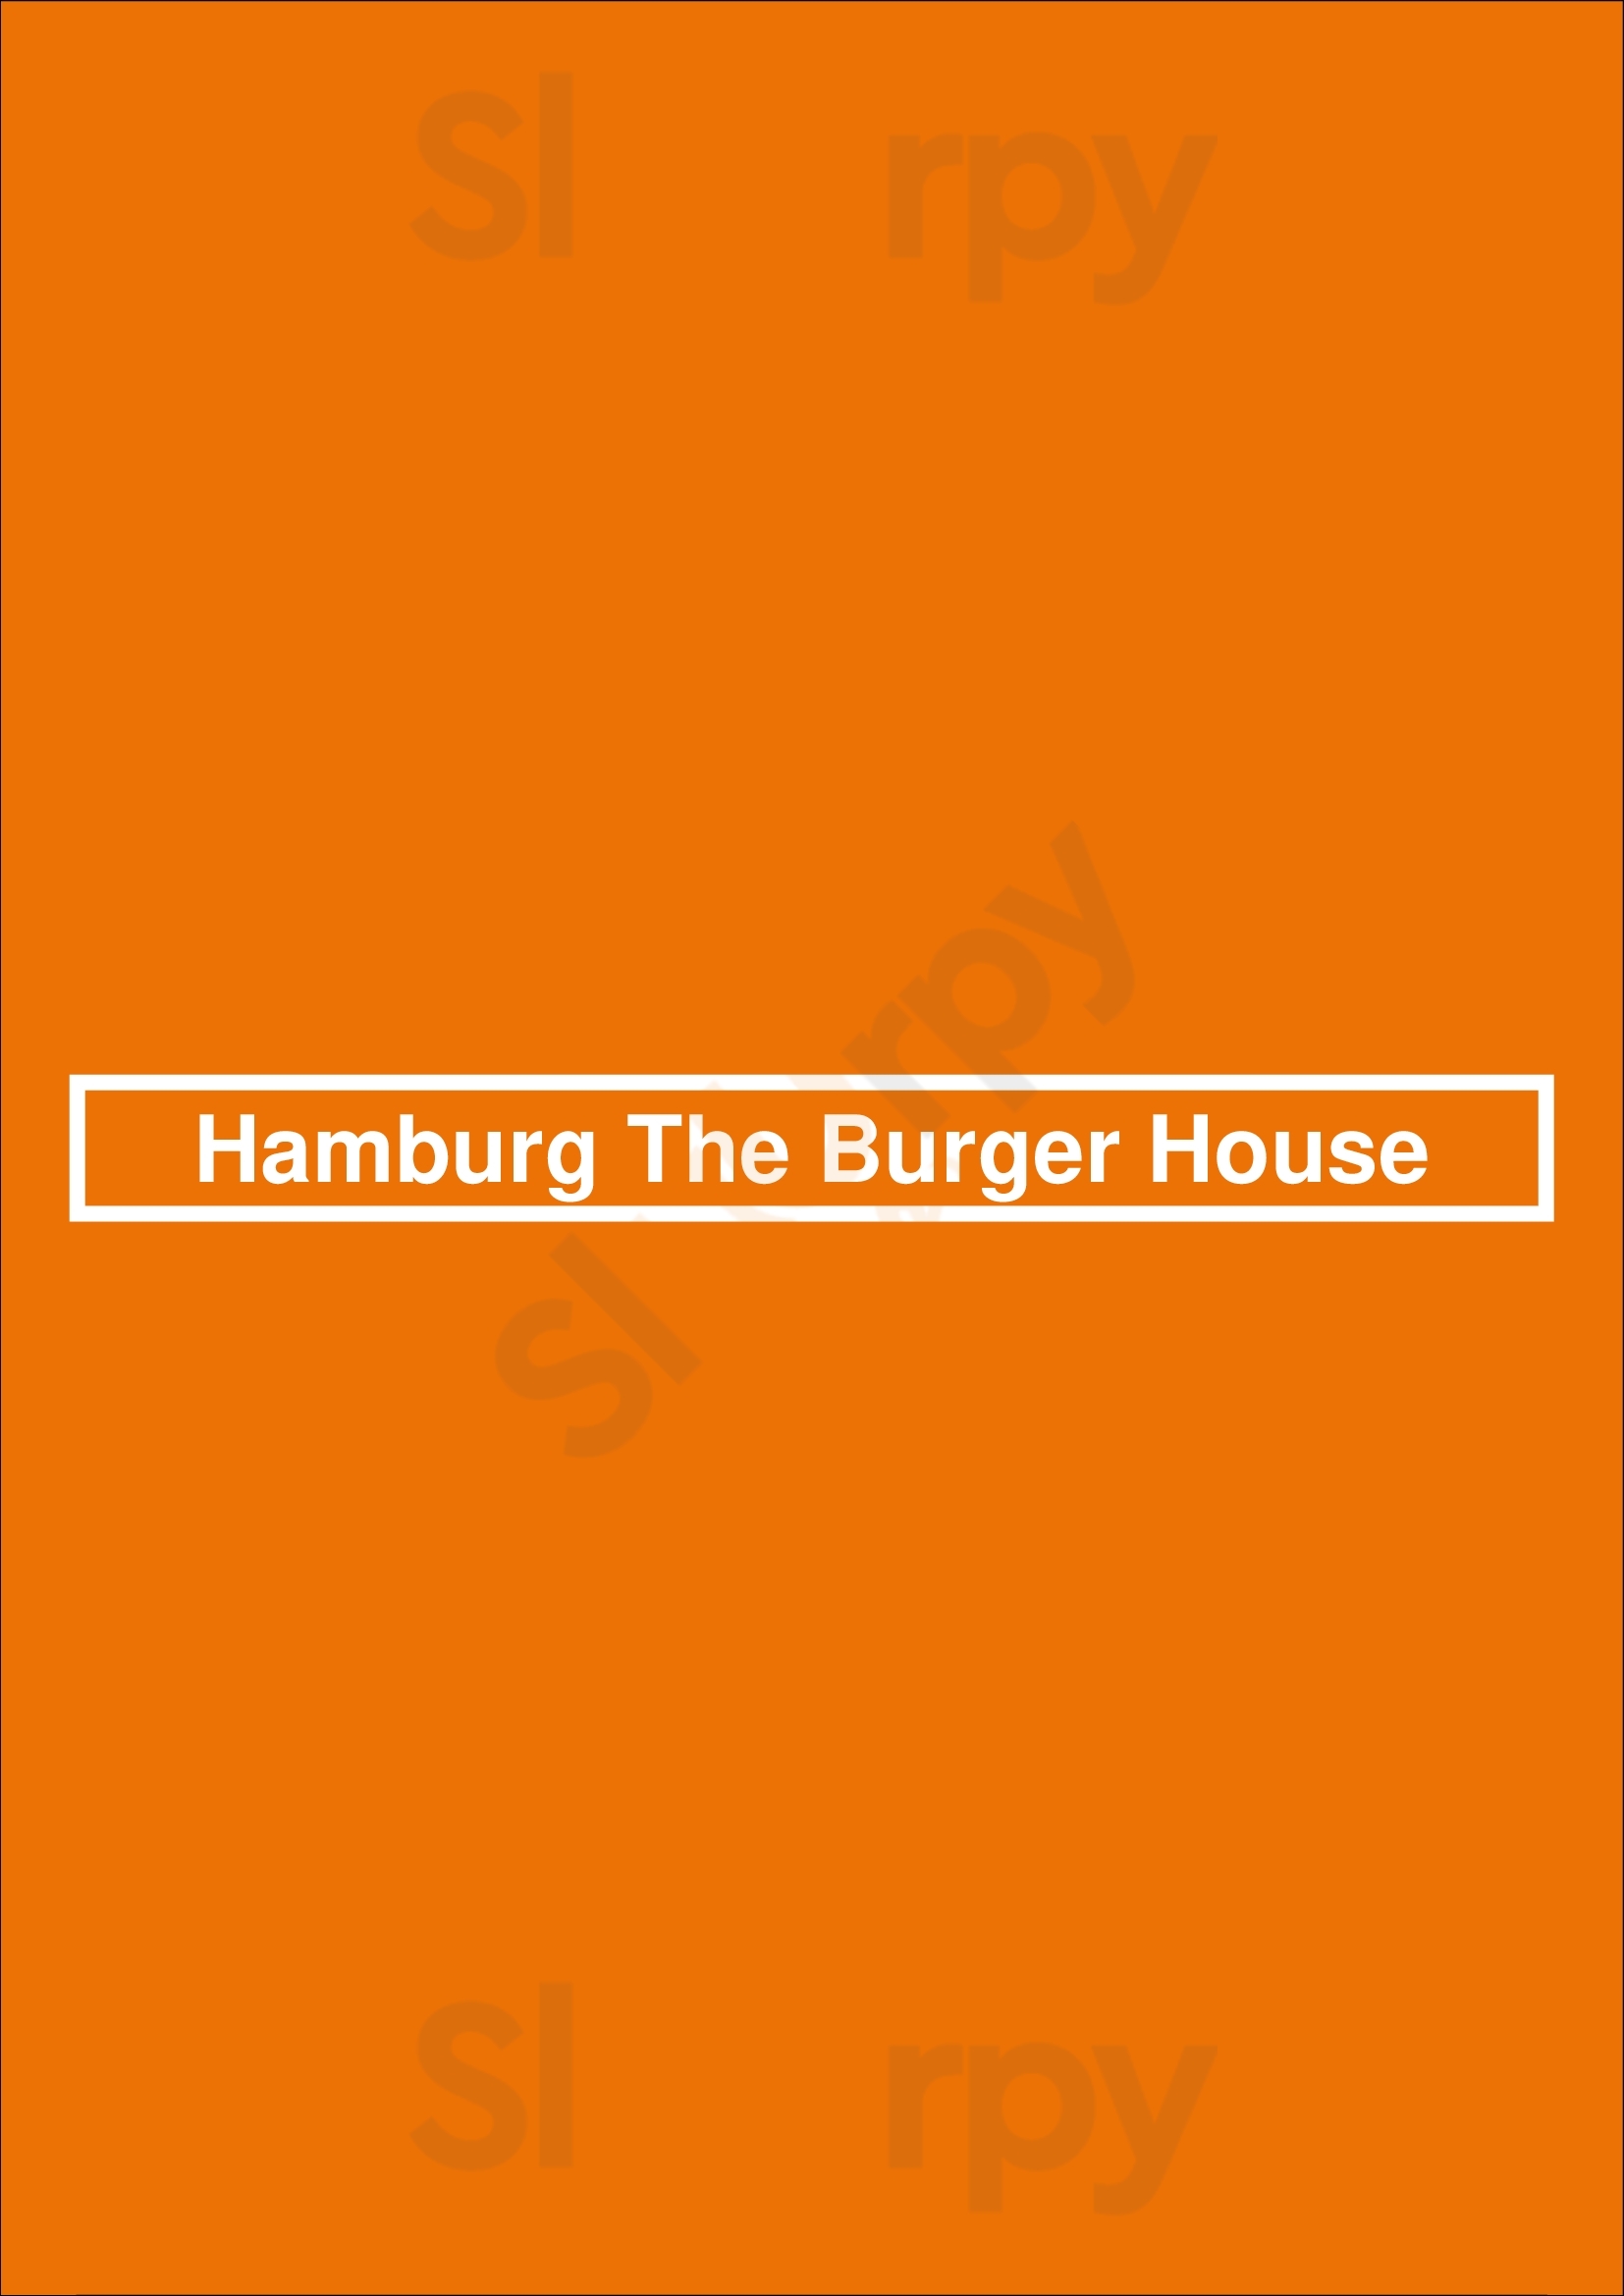 Hamburg The Burger House Lisboa Menu - 1